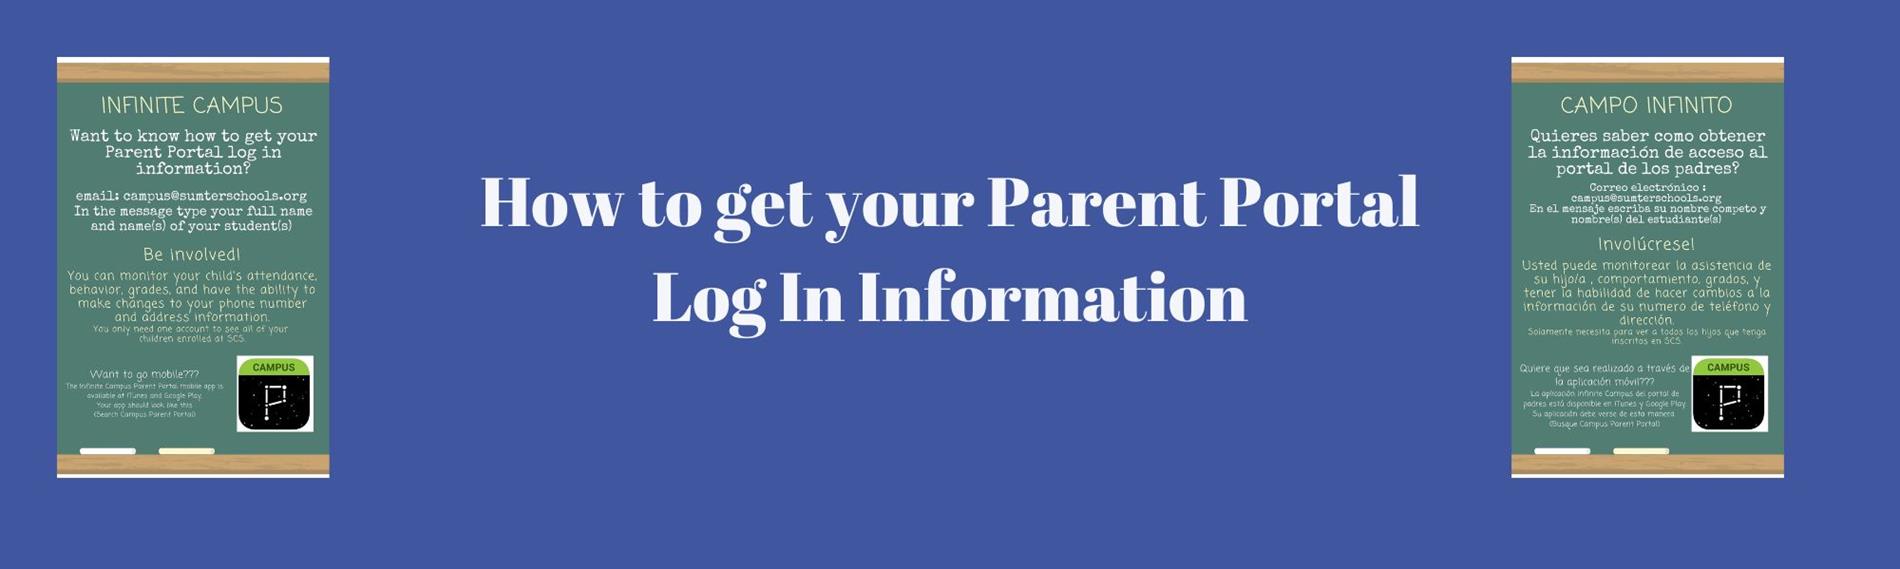 Parent Portal Information 